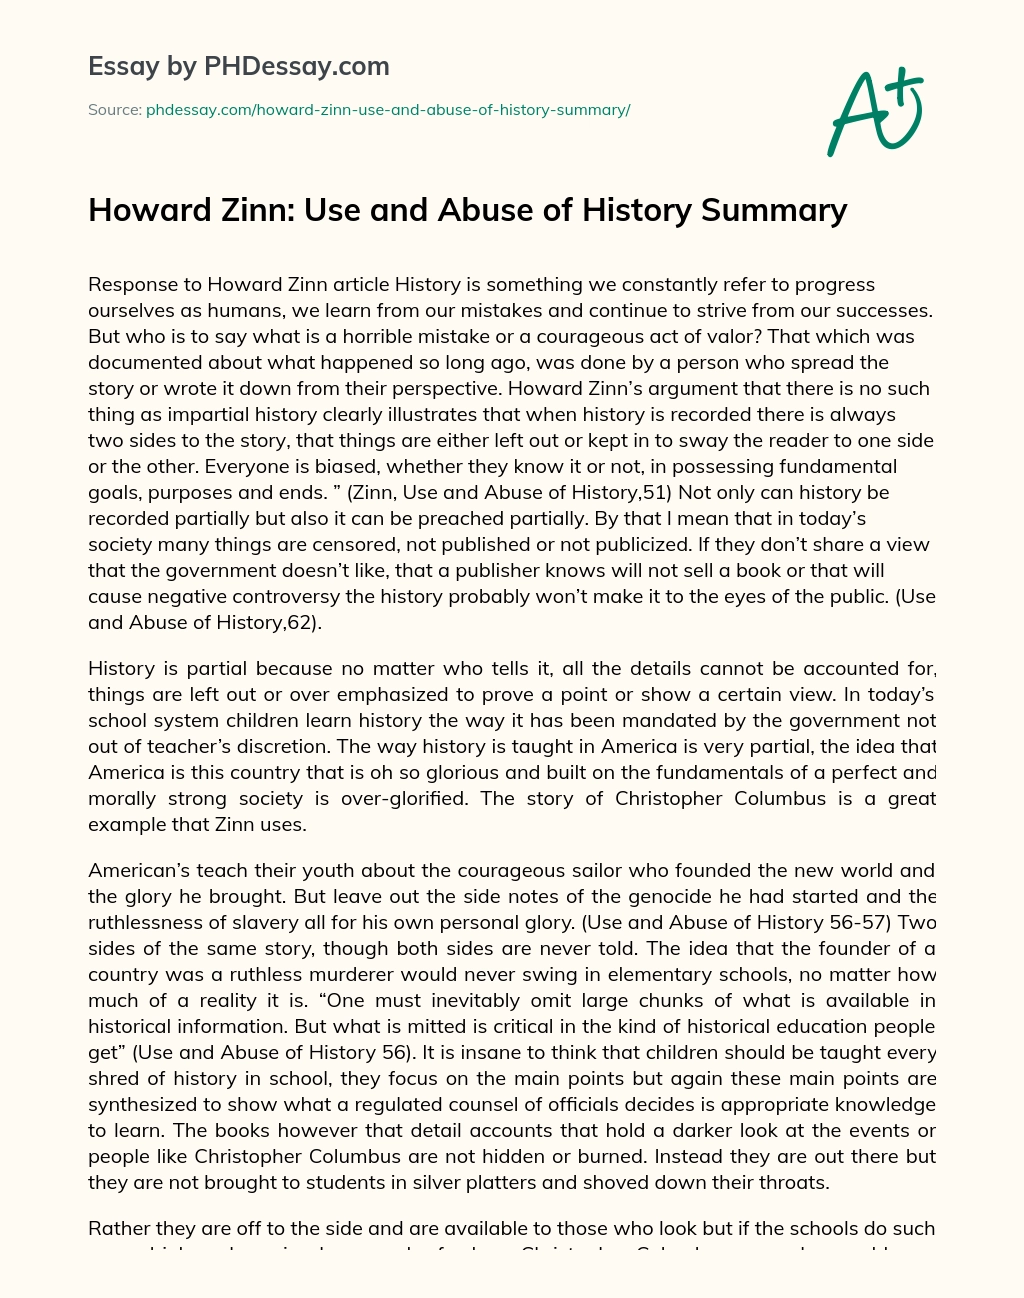 Howard Zinn: Use and Abuse of History Summary essay